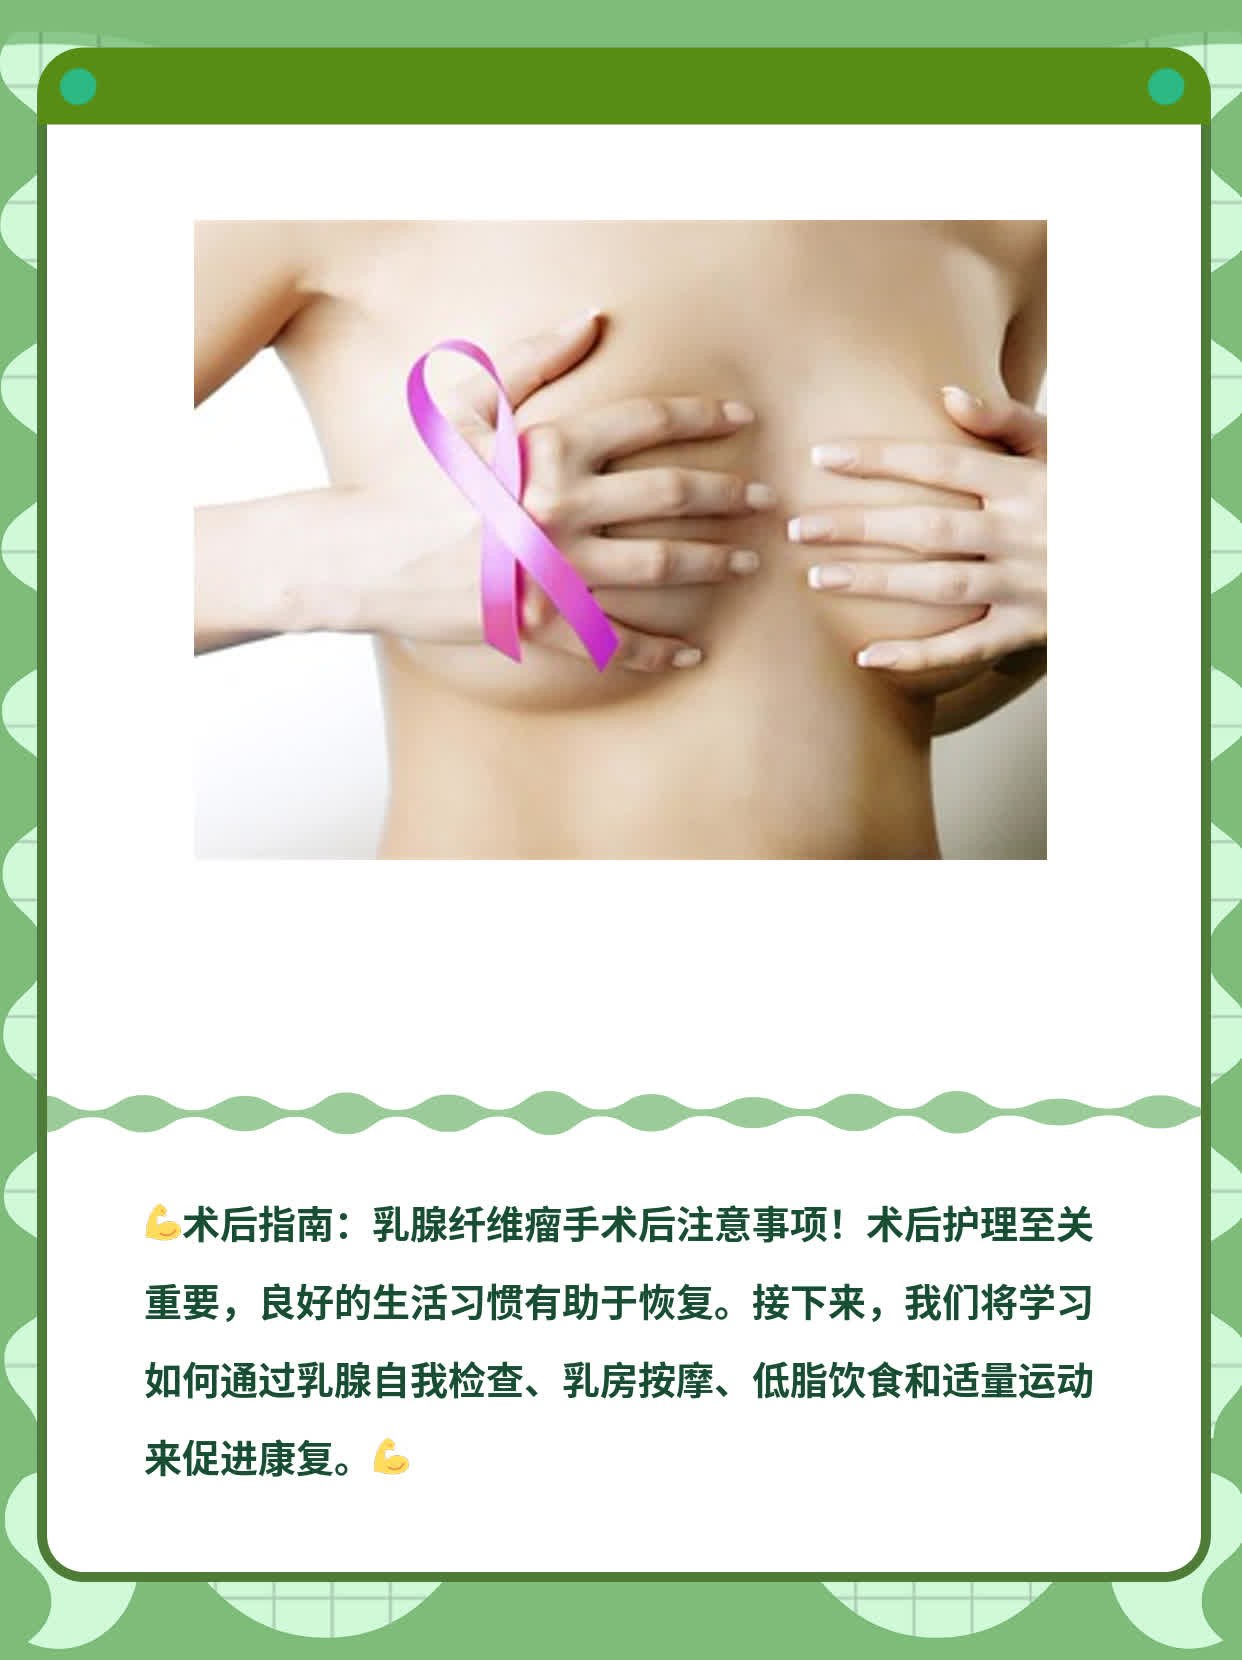 【术后指南】乳腺纤维瘤手术后注意事项